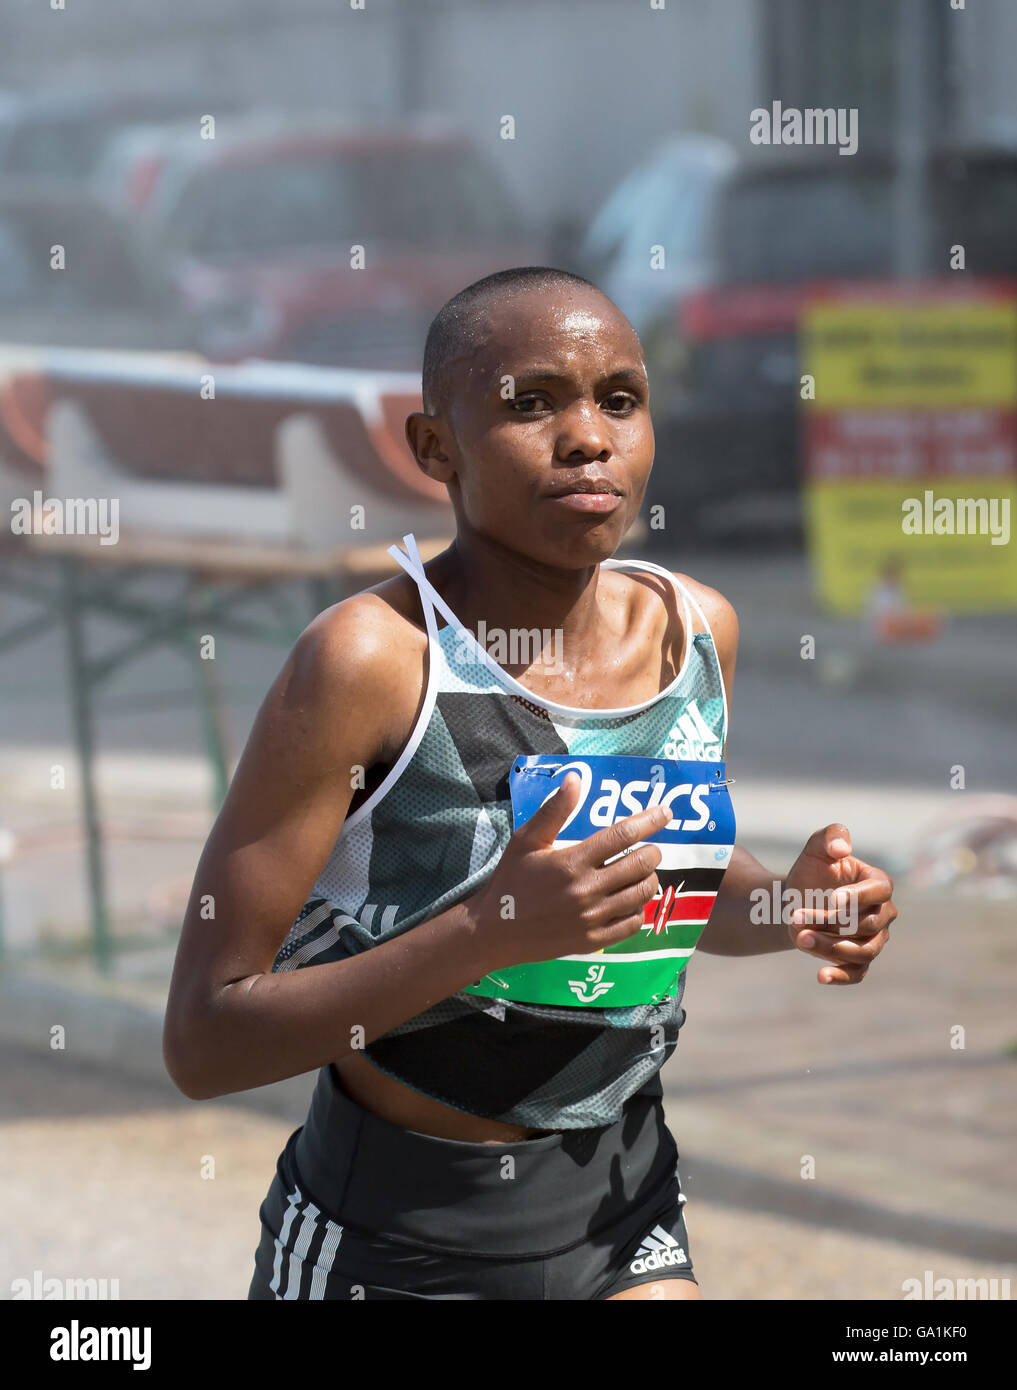 STOCKHOLM-MARATON. 4 JUNI 2016. Der Gewinner Jane Moraa Onyangi. Onyangi überquerte die Ziellinie am 02:31:46. Stockfoto